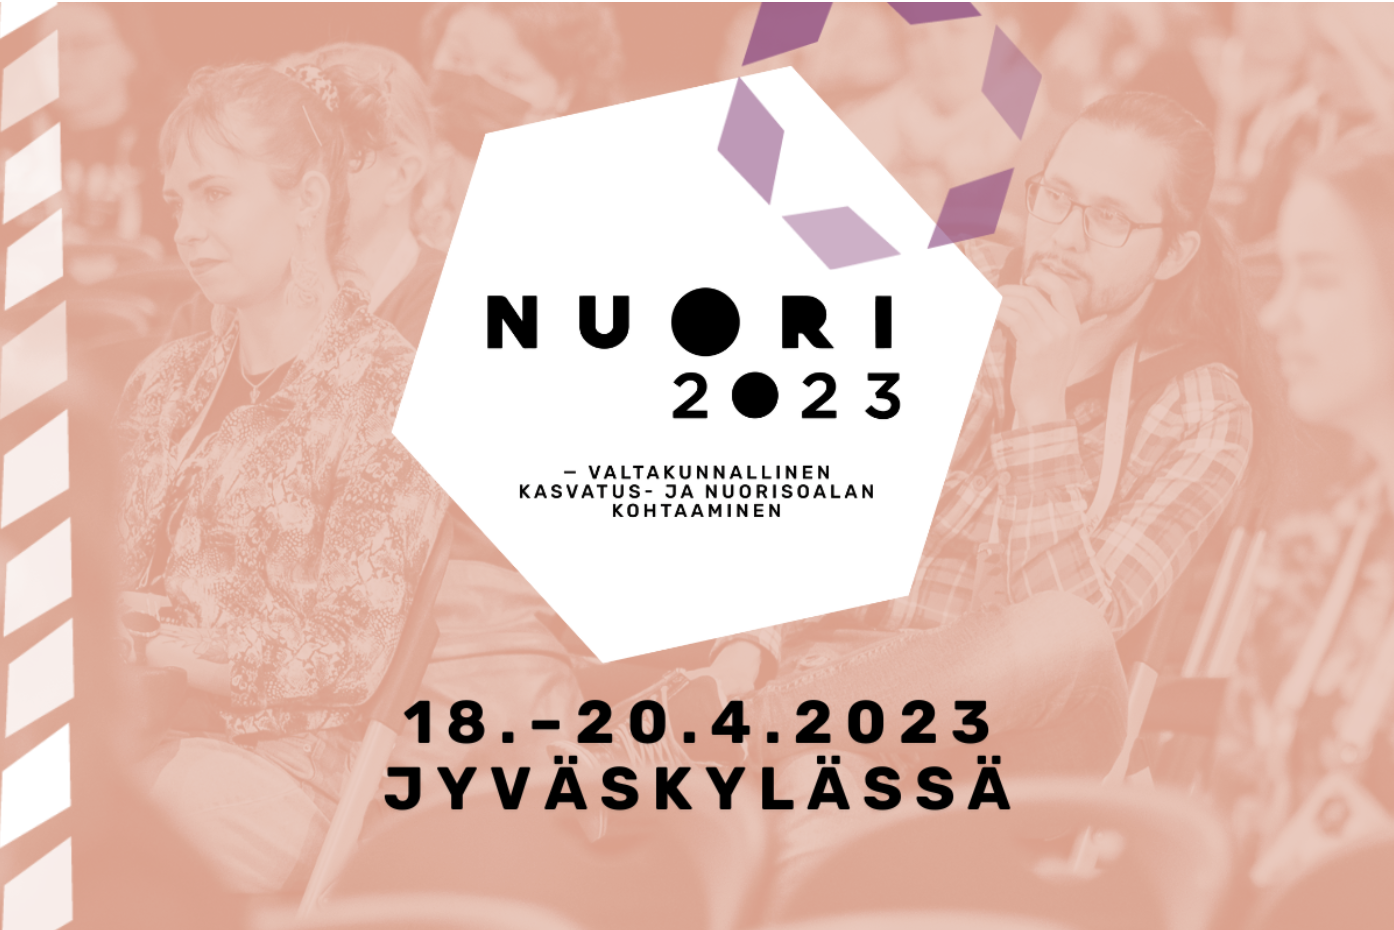 NUORI2023 -valtakunnallinen kasvatus- ja nuorisoalan kohtaaminen. 18.-20.4.2023 Jyväskylässä.